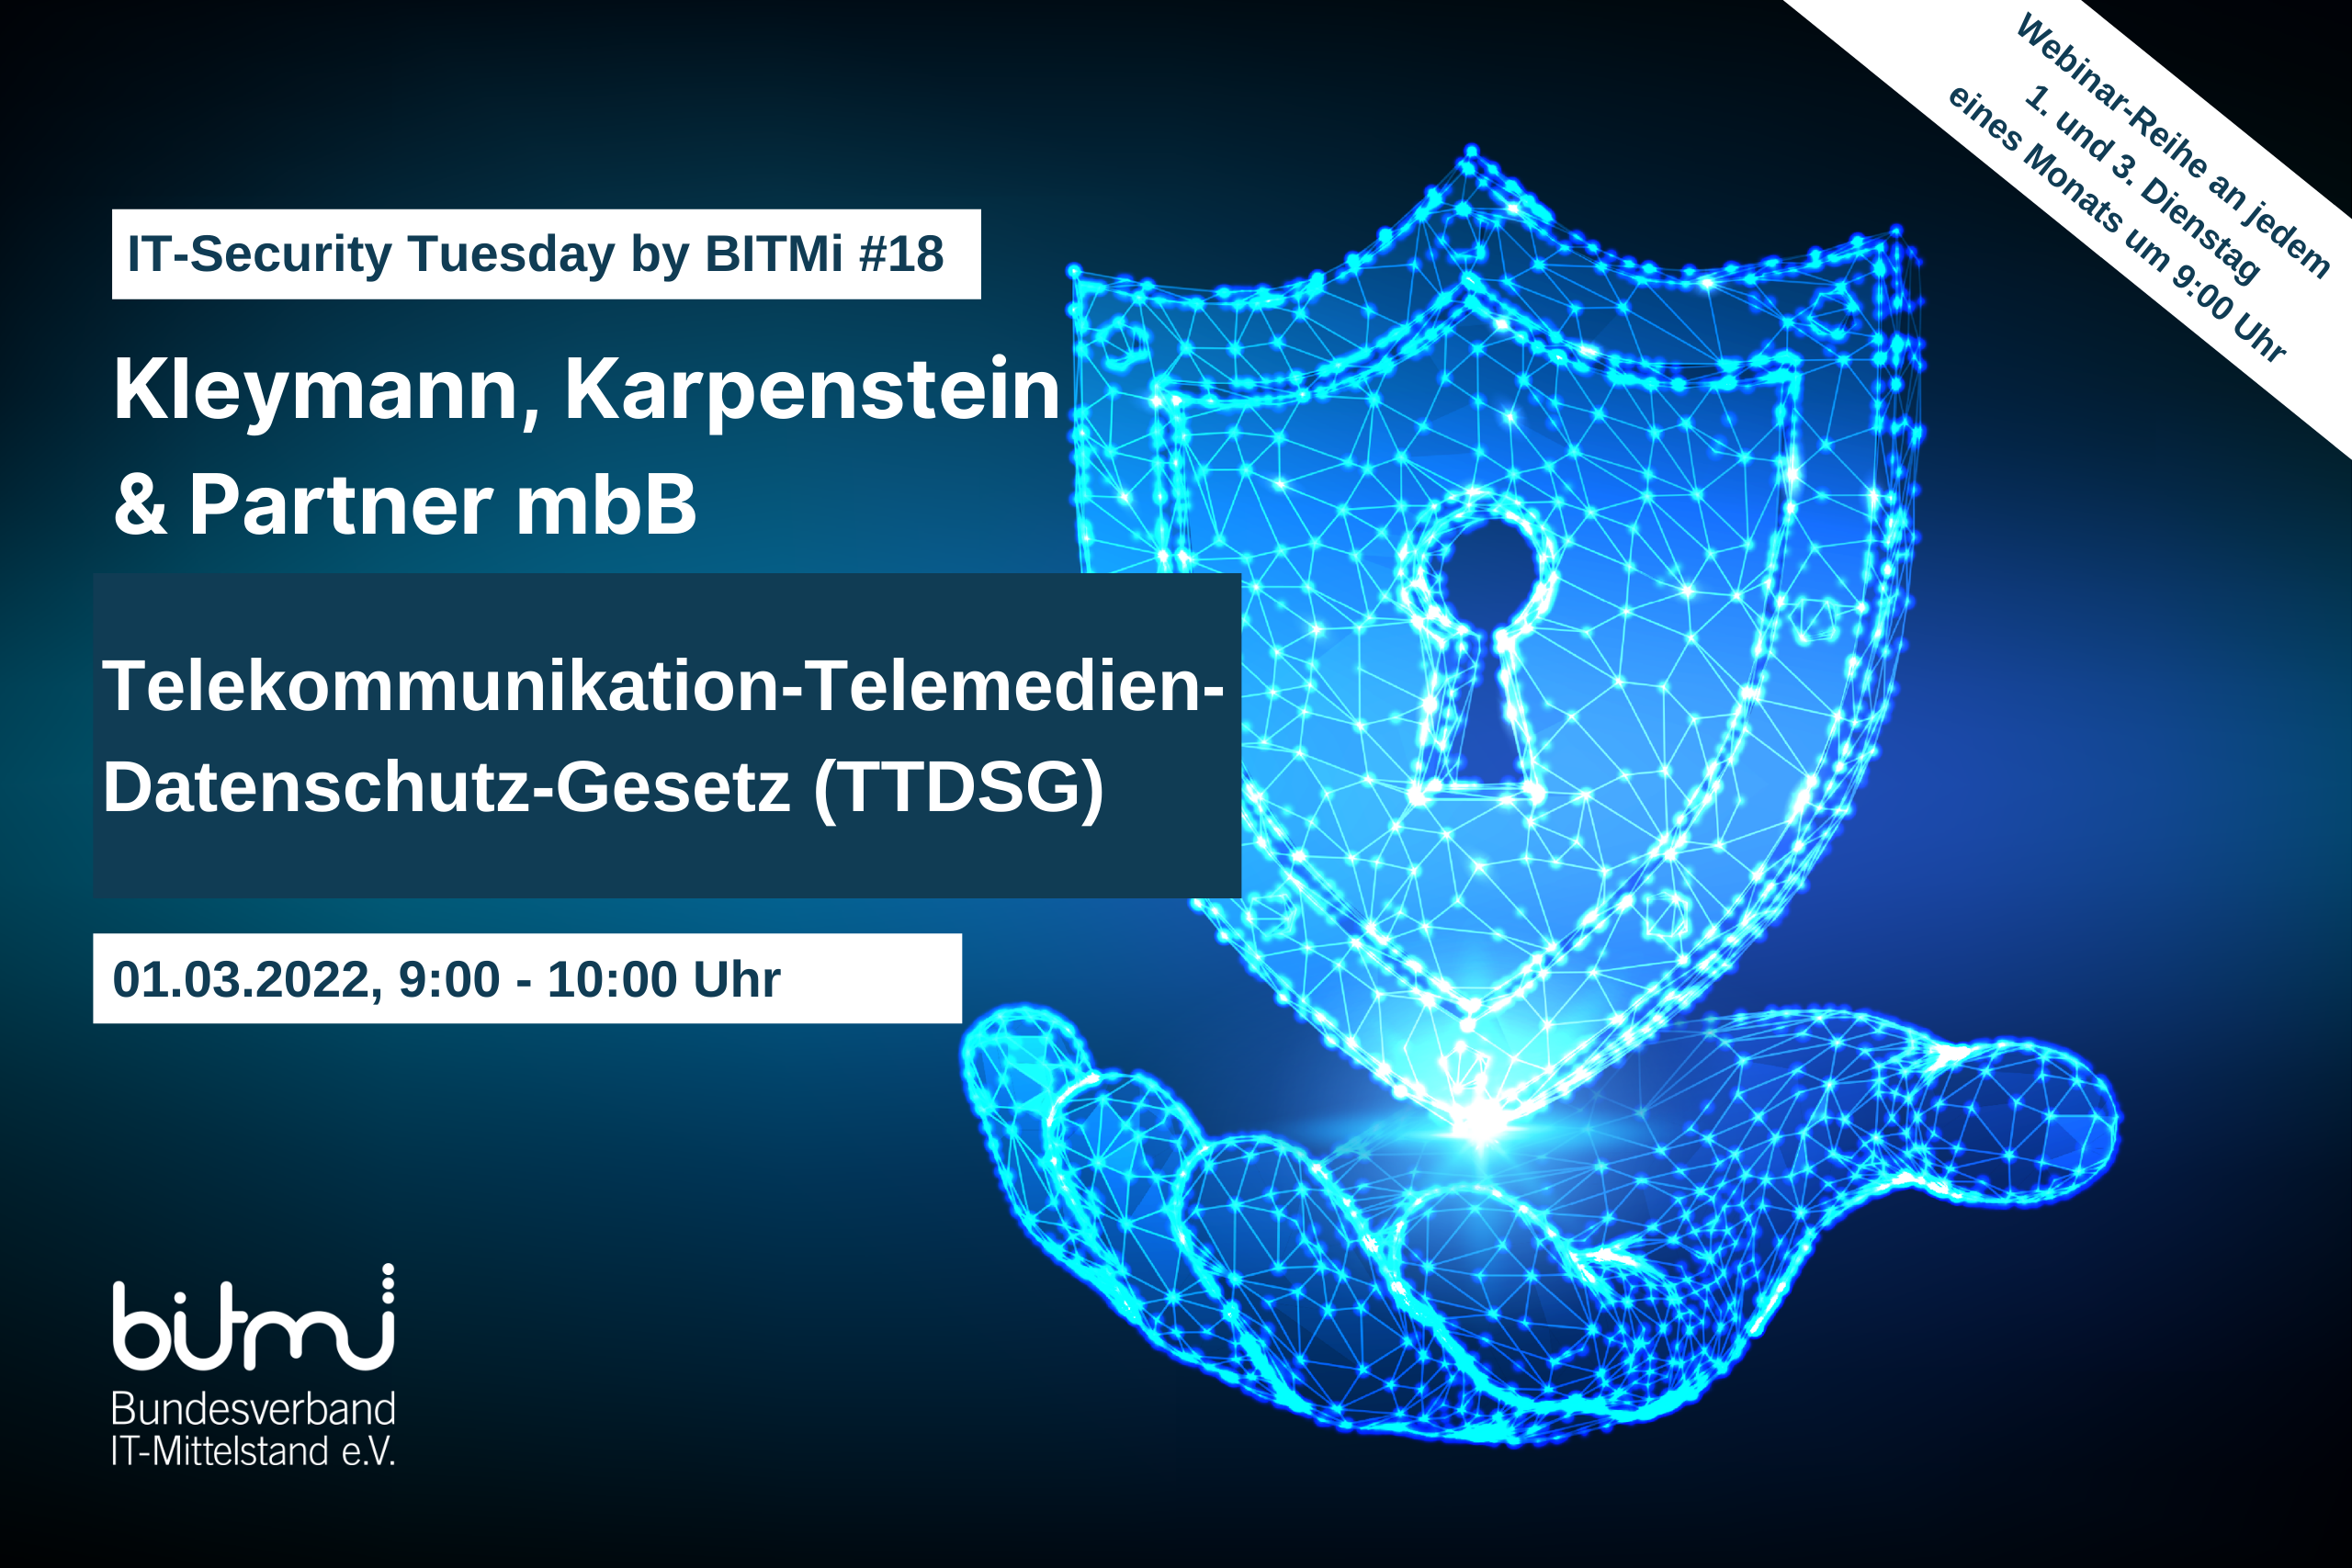 IT-Security Tuesday mit BITMi Mitglied Kleymann, Karpenstein & Partner: Telekommunikation-Telemedien-Datenschutz-Gesetz